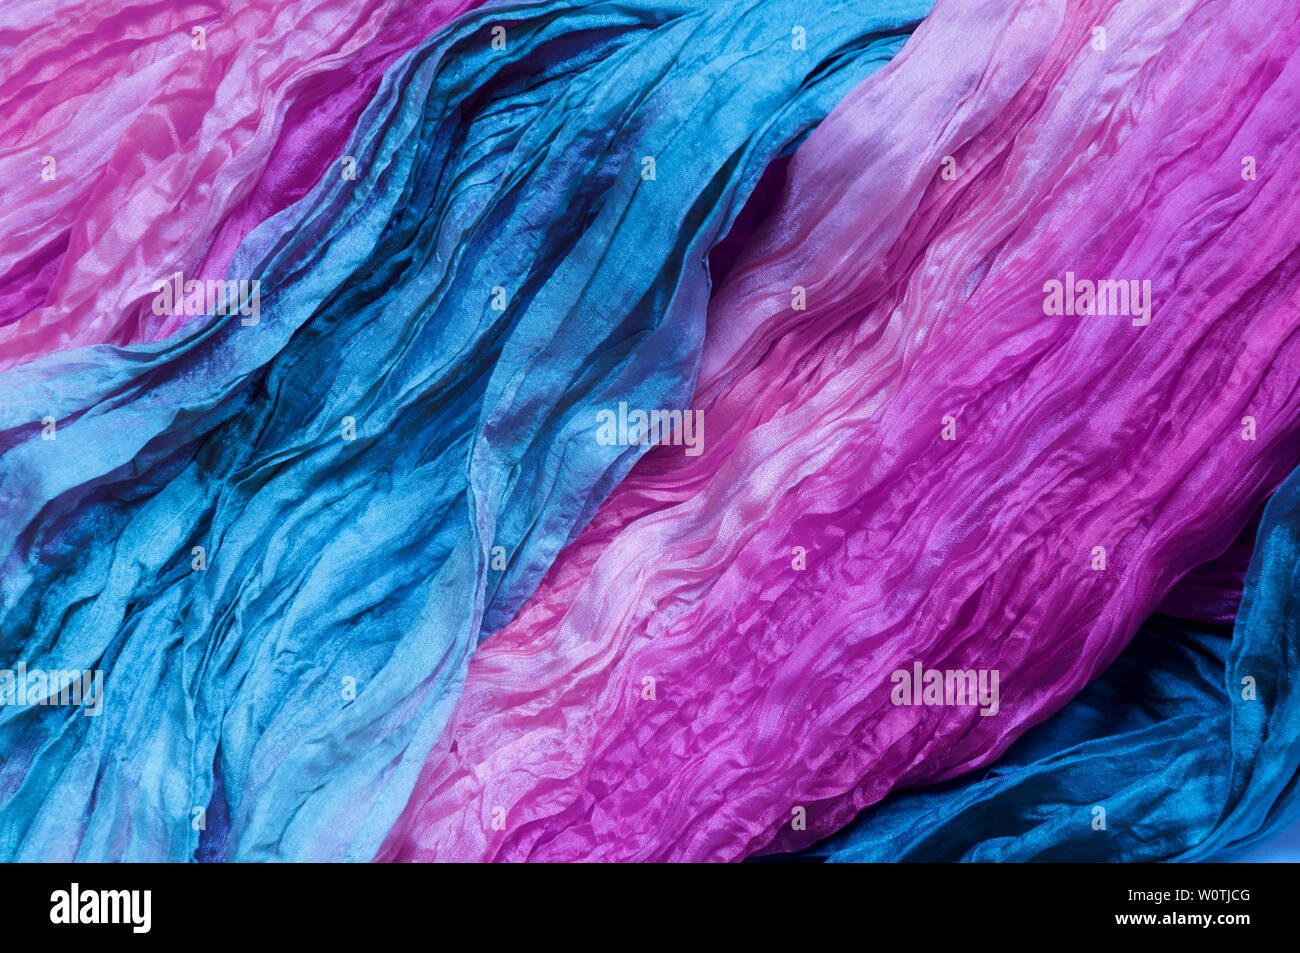 Ultraviolette, blaue Seide als abstrakter Hintergrund. Stock Photo